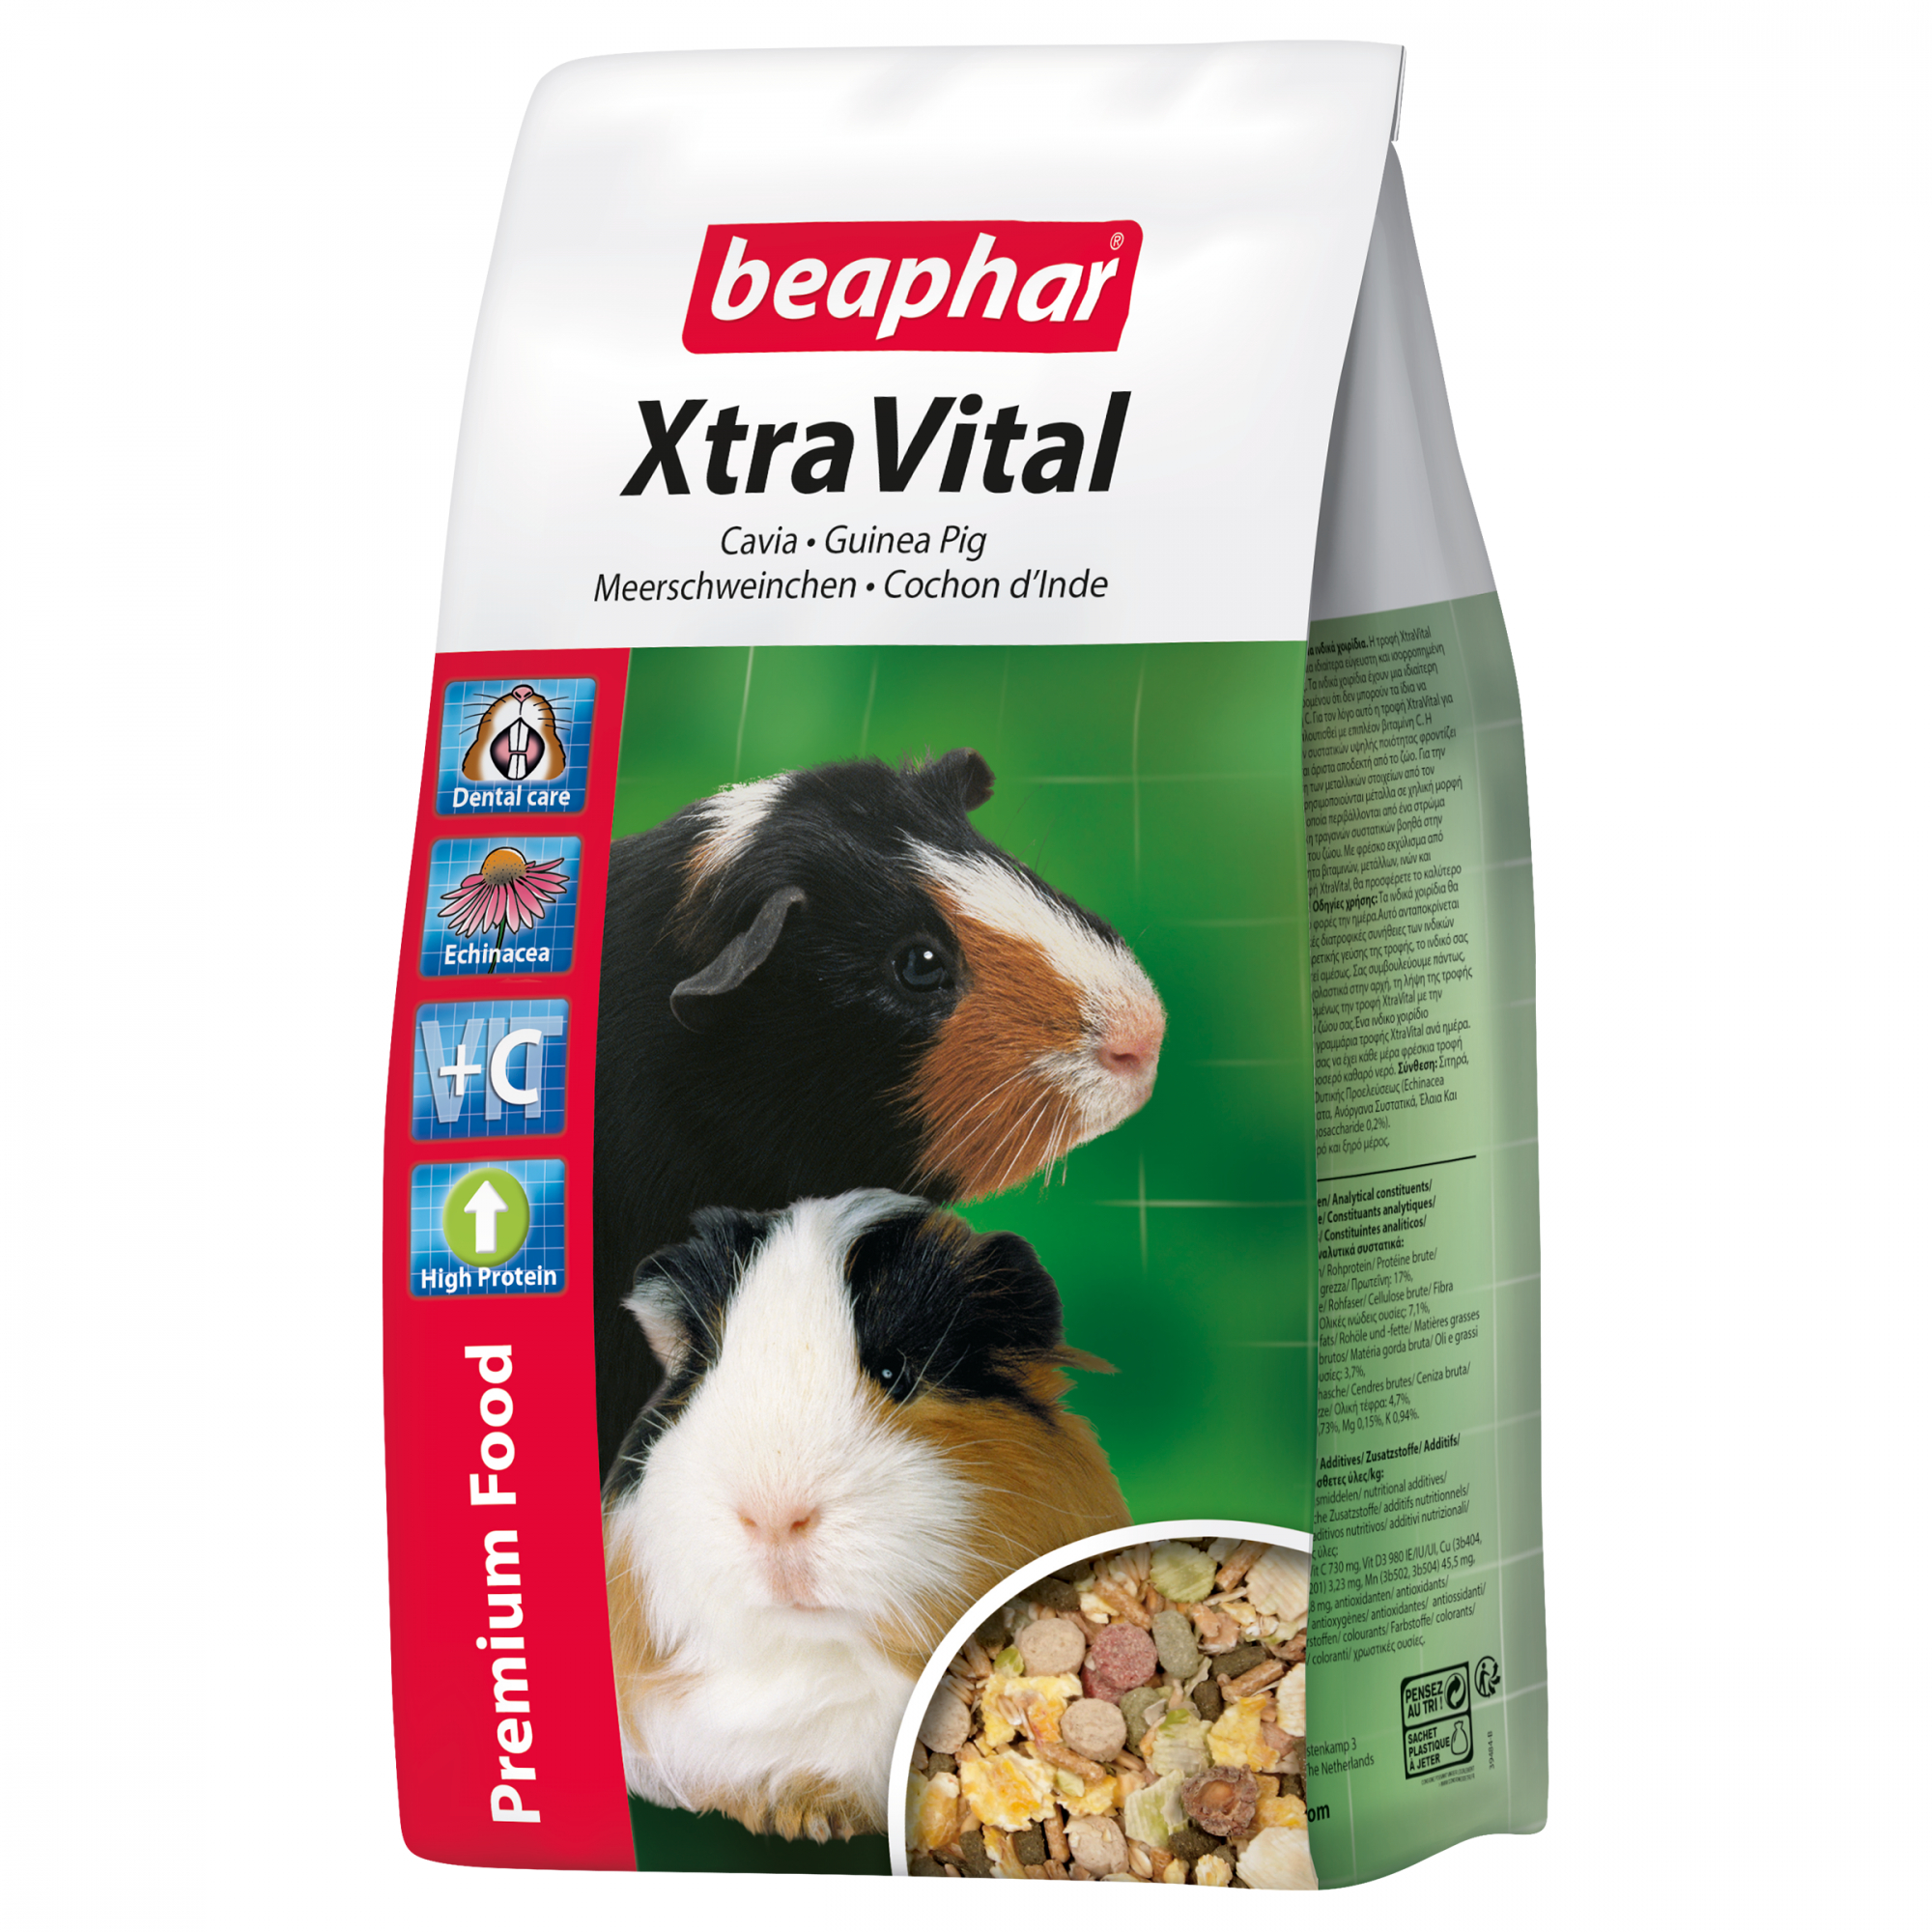 XtraVital, alimentação premium porquinho-da-índia